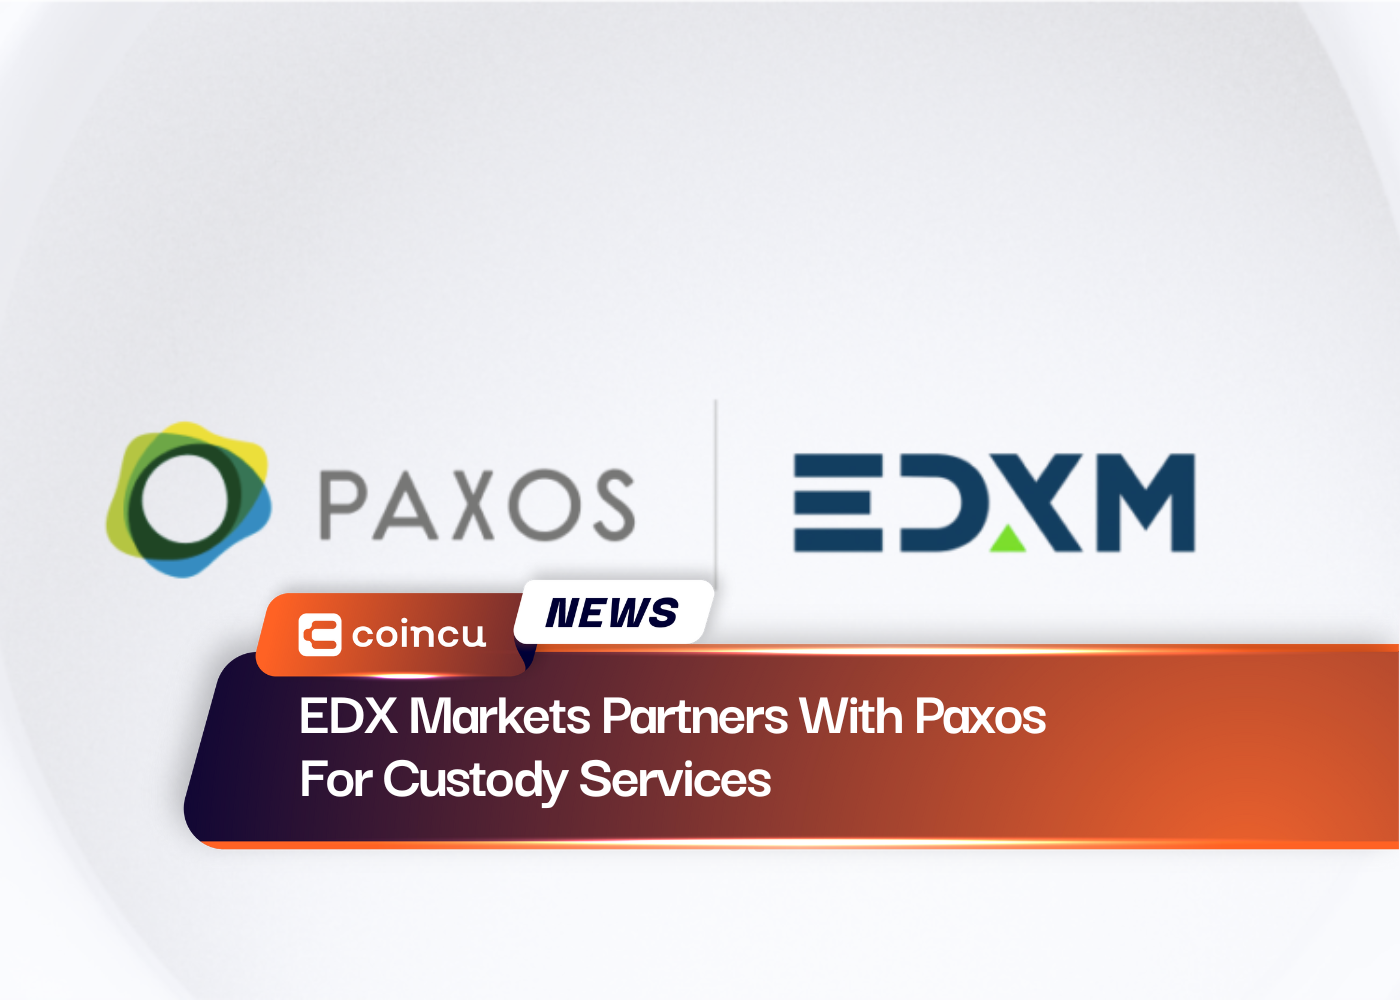 ईडीएक्स मार्केट्स ने कस्टडी सेवाओं के लिए पैक्सोस के साथ साझेदारी की है